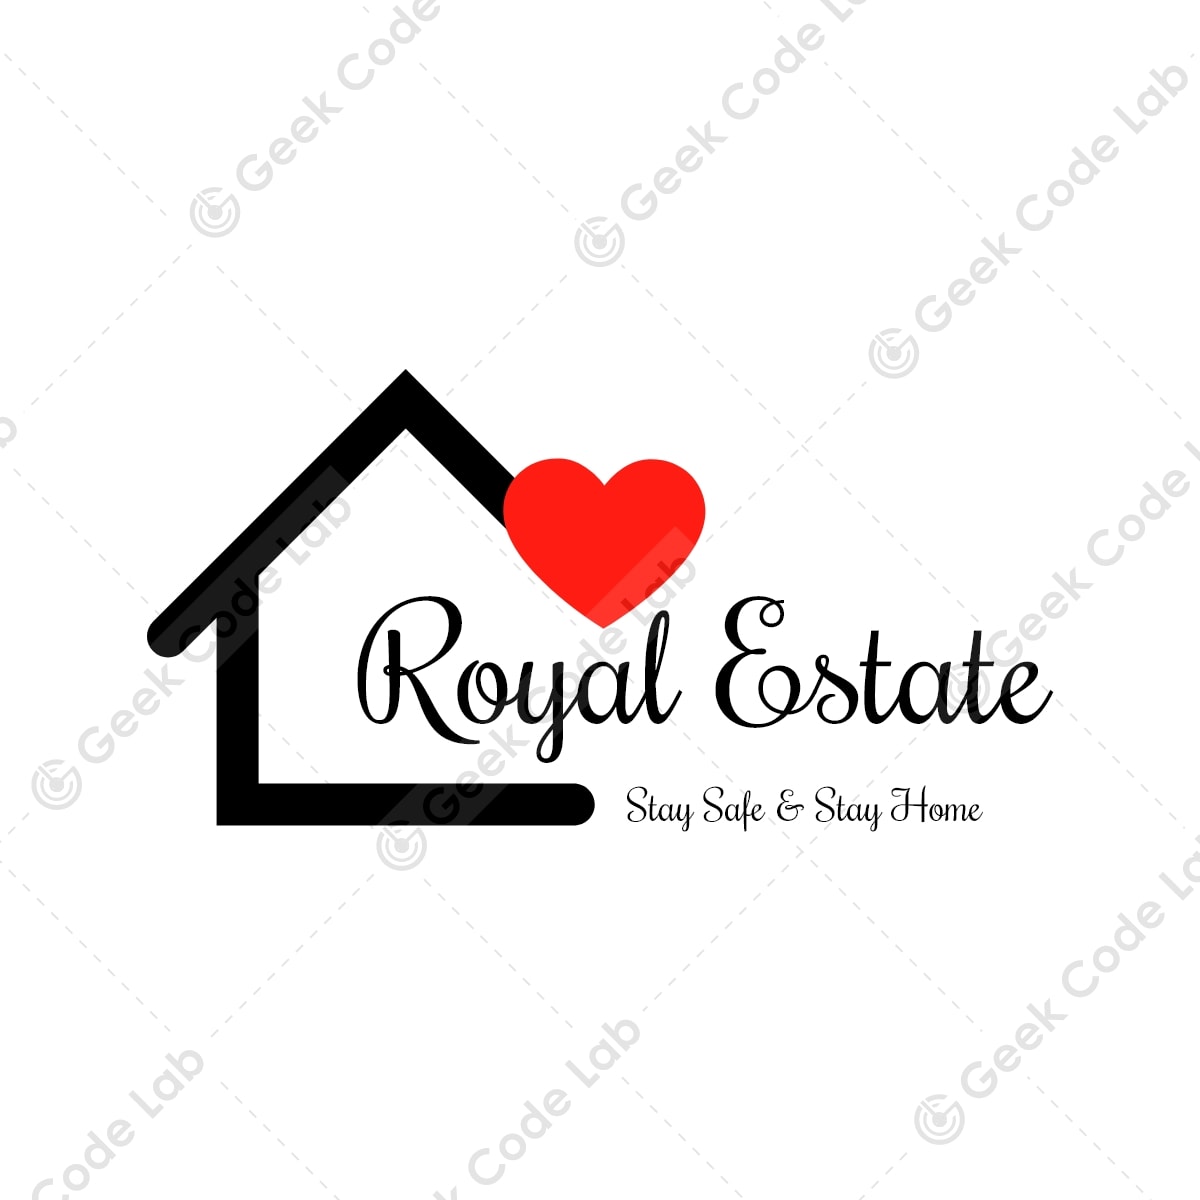 Royal Estate